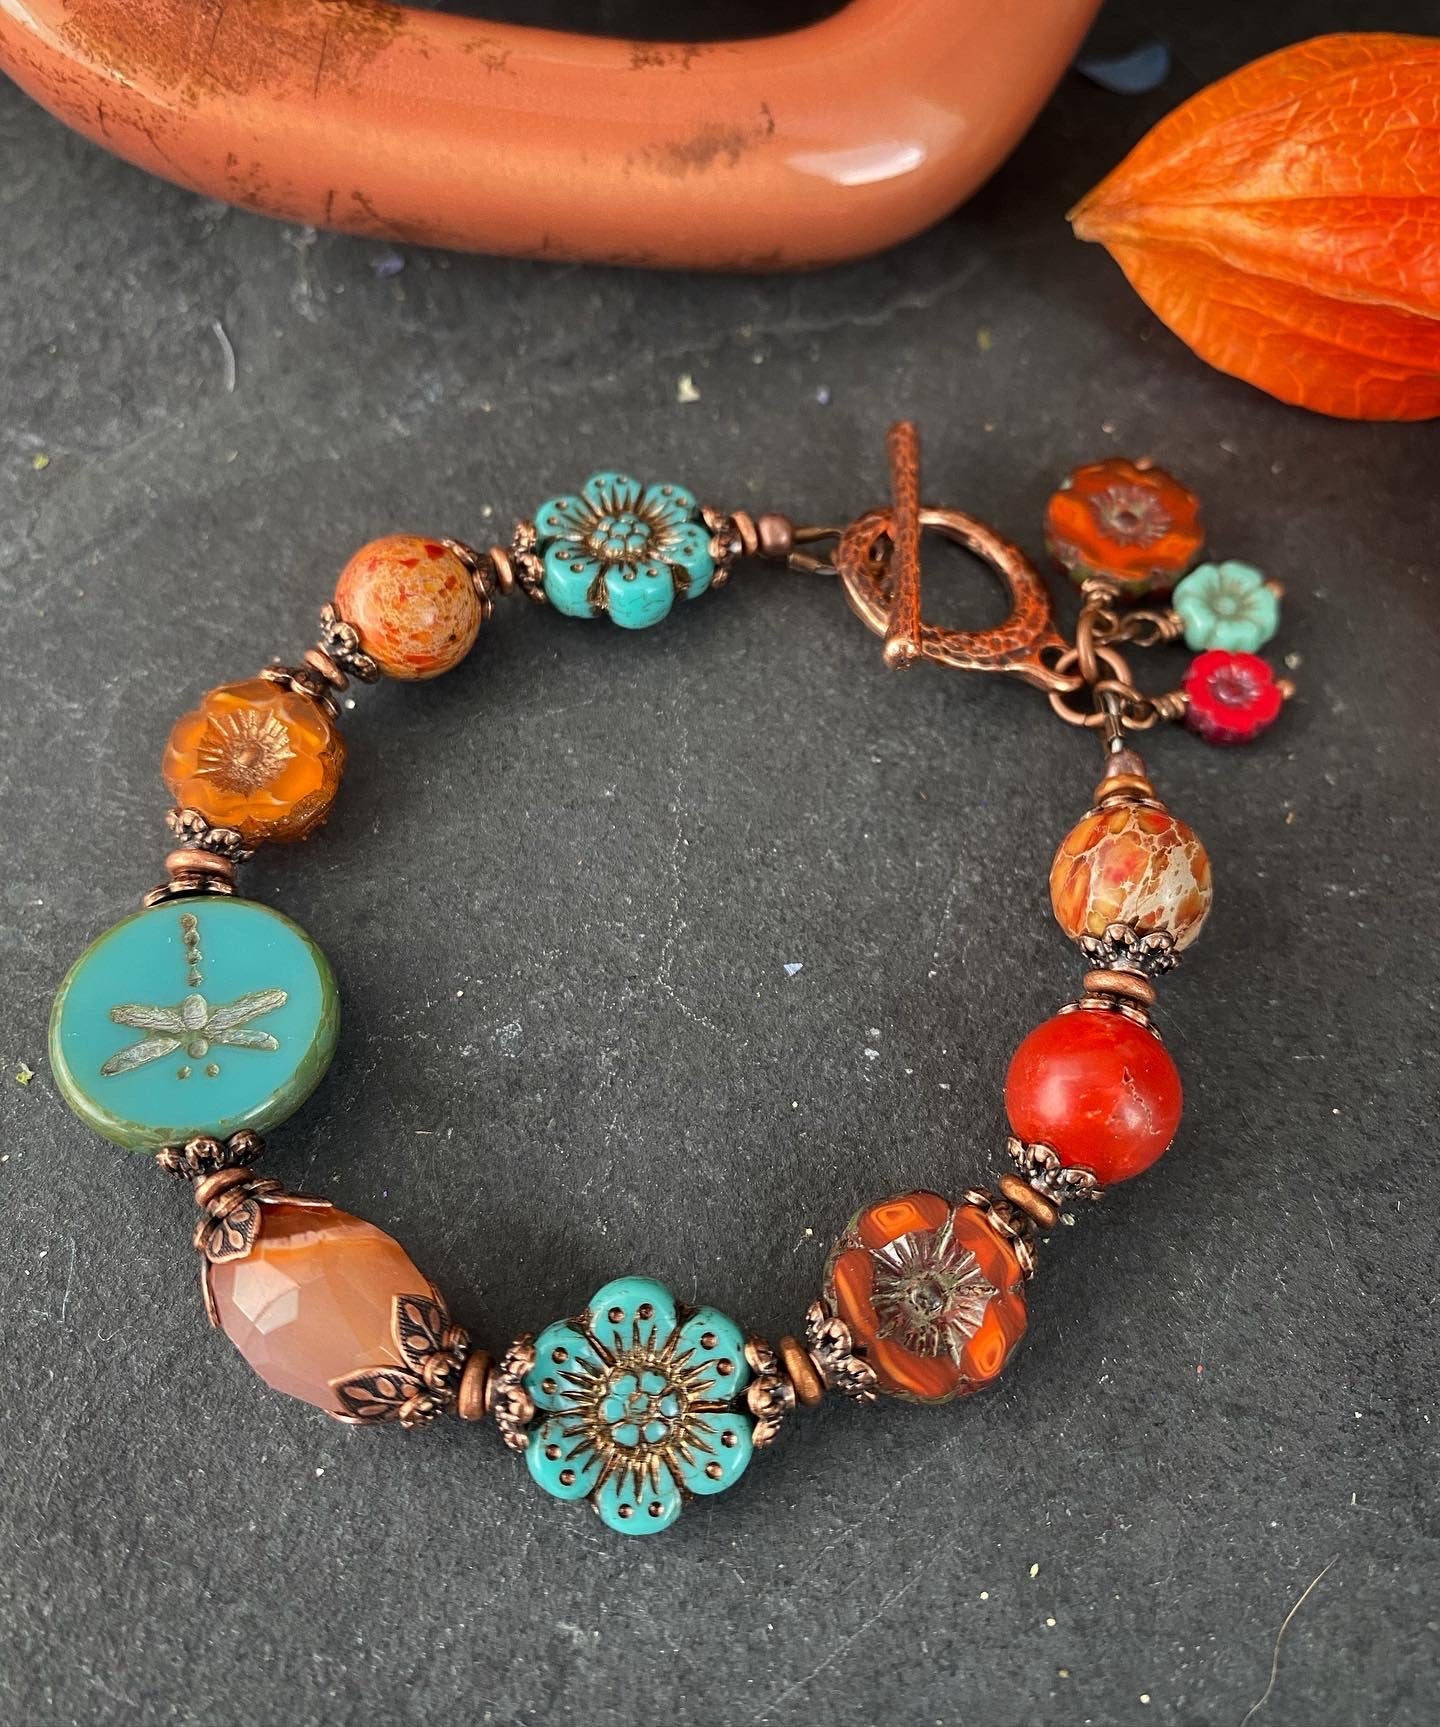 Flower Czech glass in turquoise, orange jasper, agate, bracelet, KIT